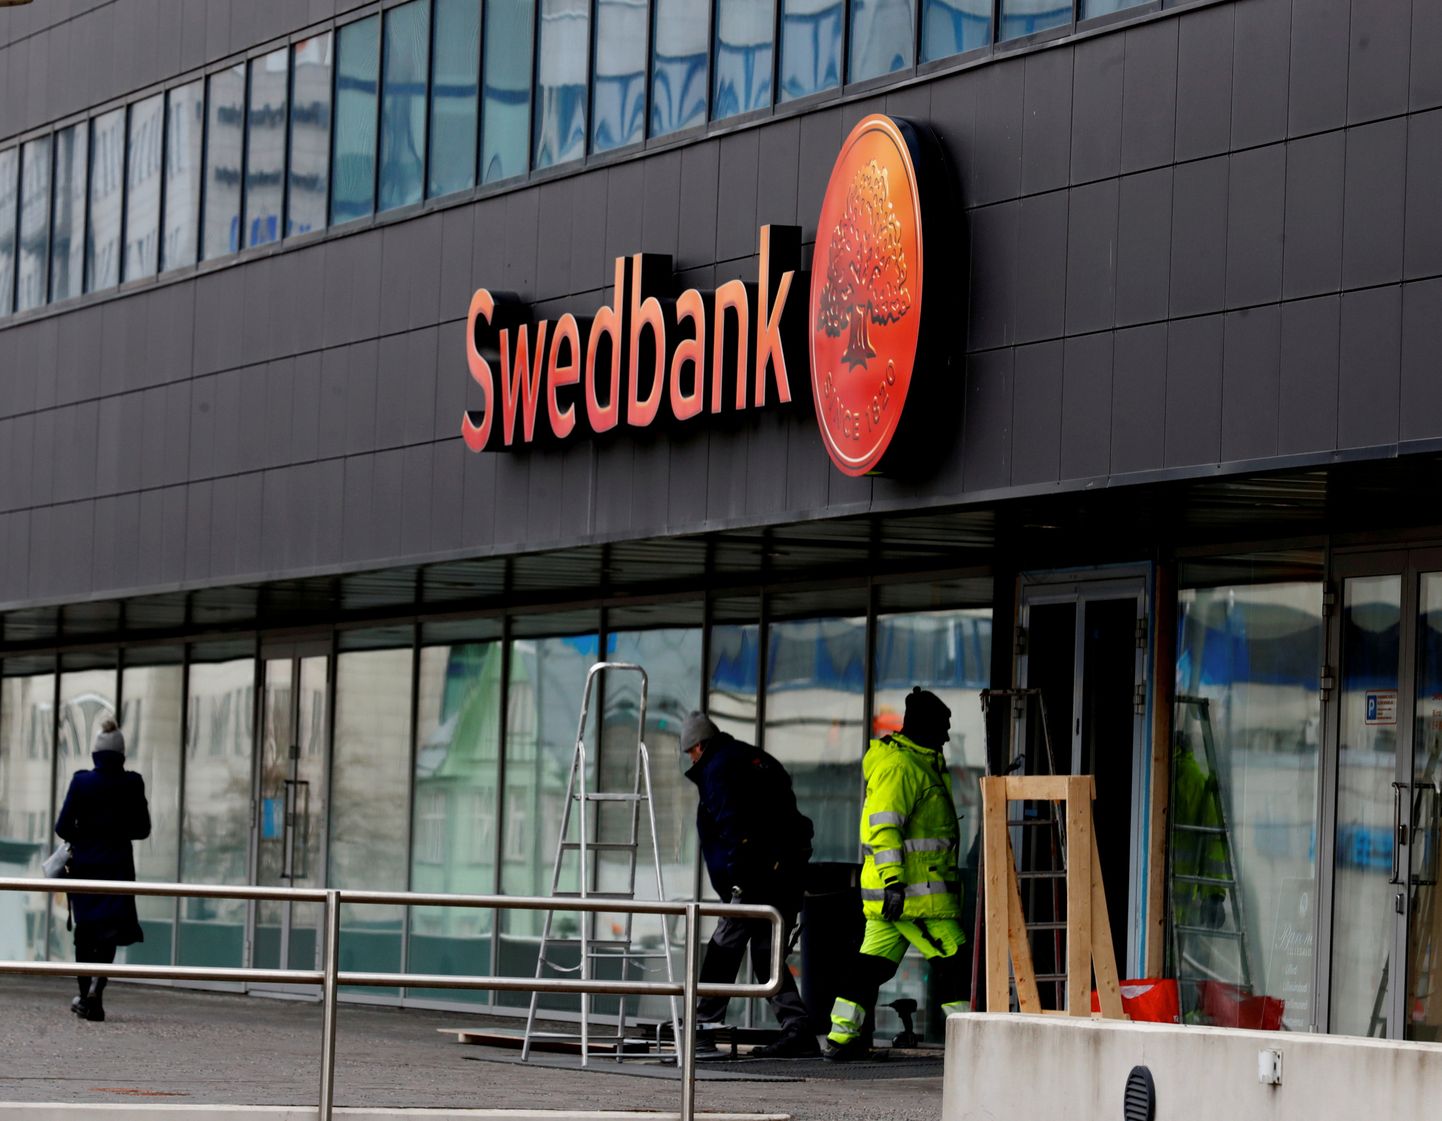 "Swedbank" ēka.